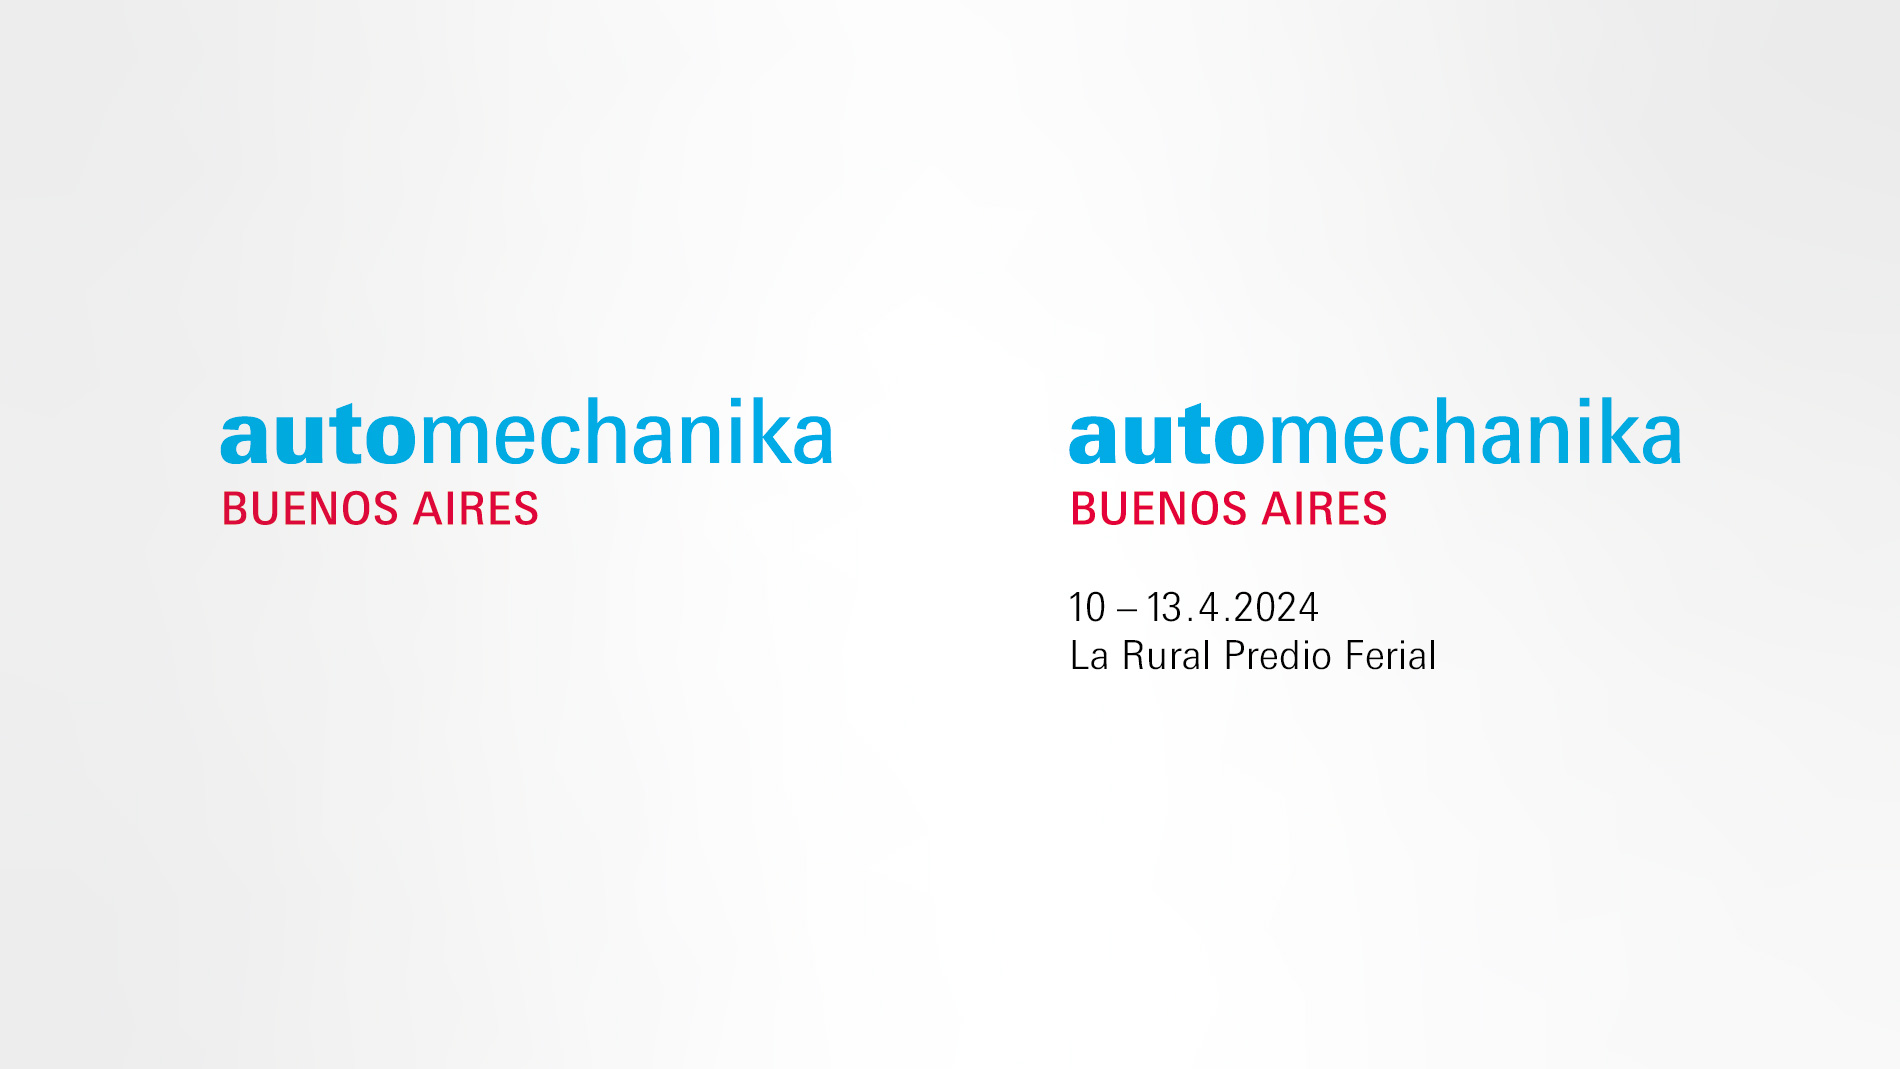 Automechanika Buenos Aires: Logos del evento